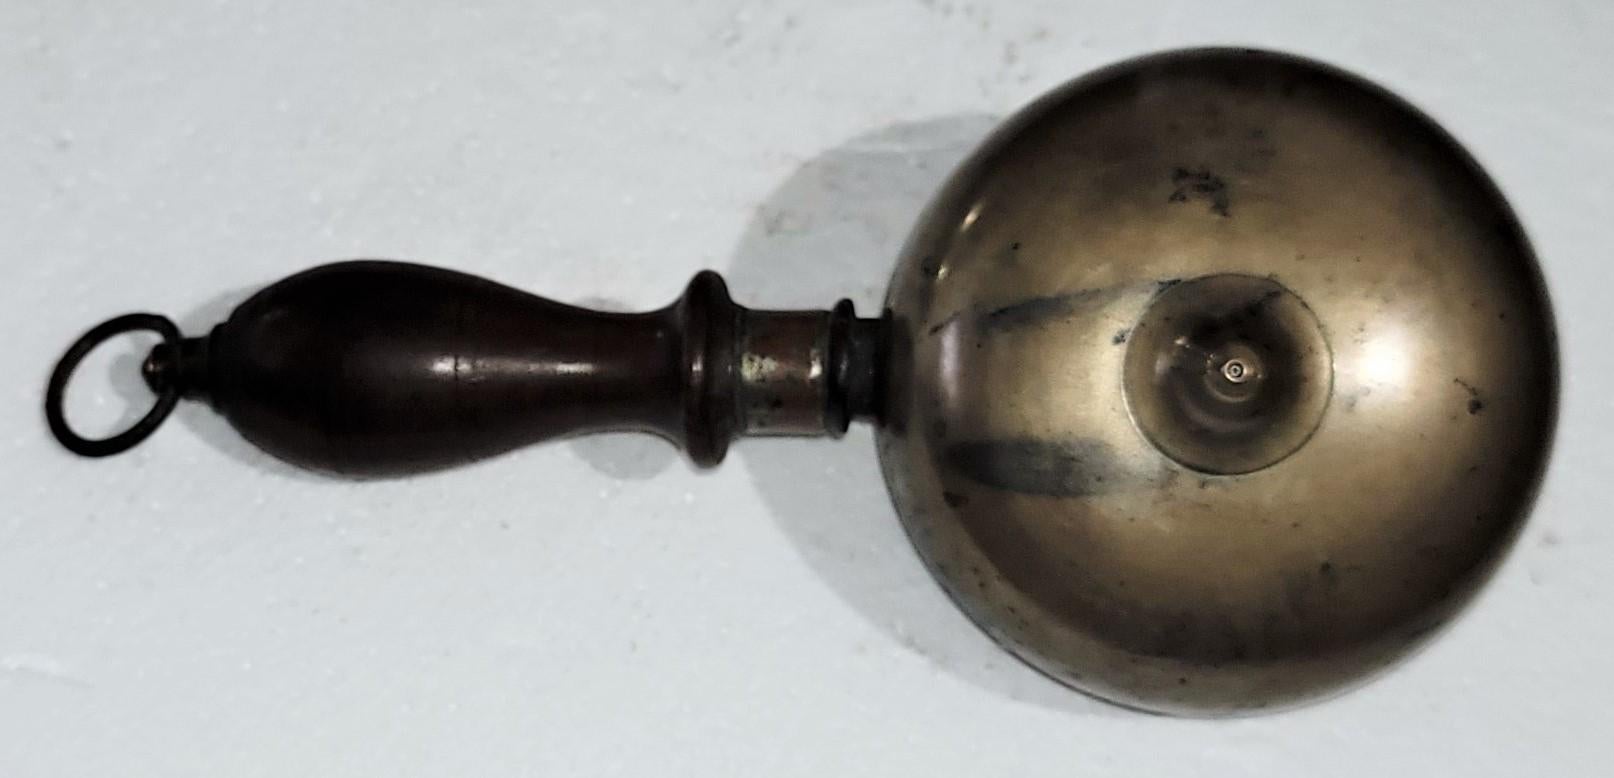 Seltene handgehaltene Muffin-Glocke aus dem 19. Jahrhundert, die den Feueralarm ausruft. Die Glocke besteht aus zwei Messingkuppeln, die Rücken an Rücken mit Eisen montiert sind, einem gedrechselten Holzgriff und einem Messingring. Die Glocke wurde